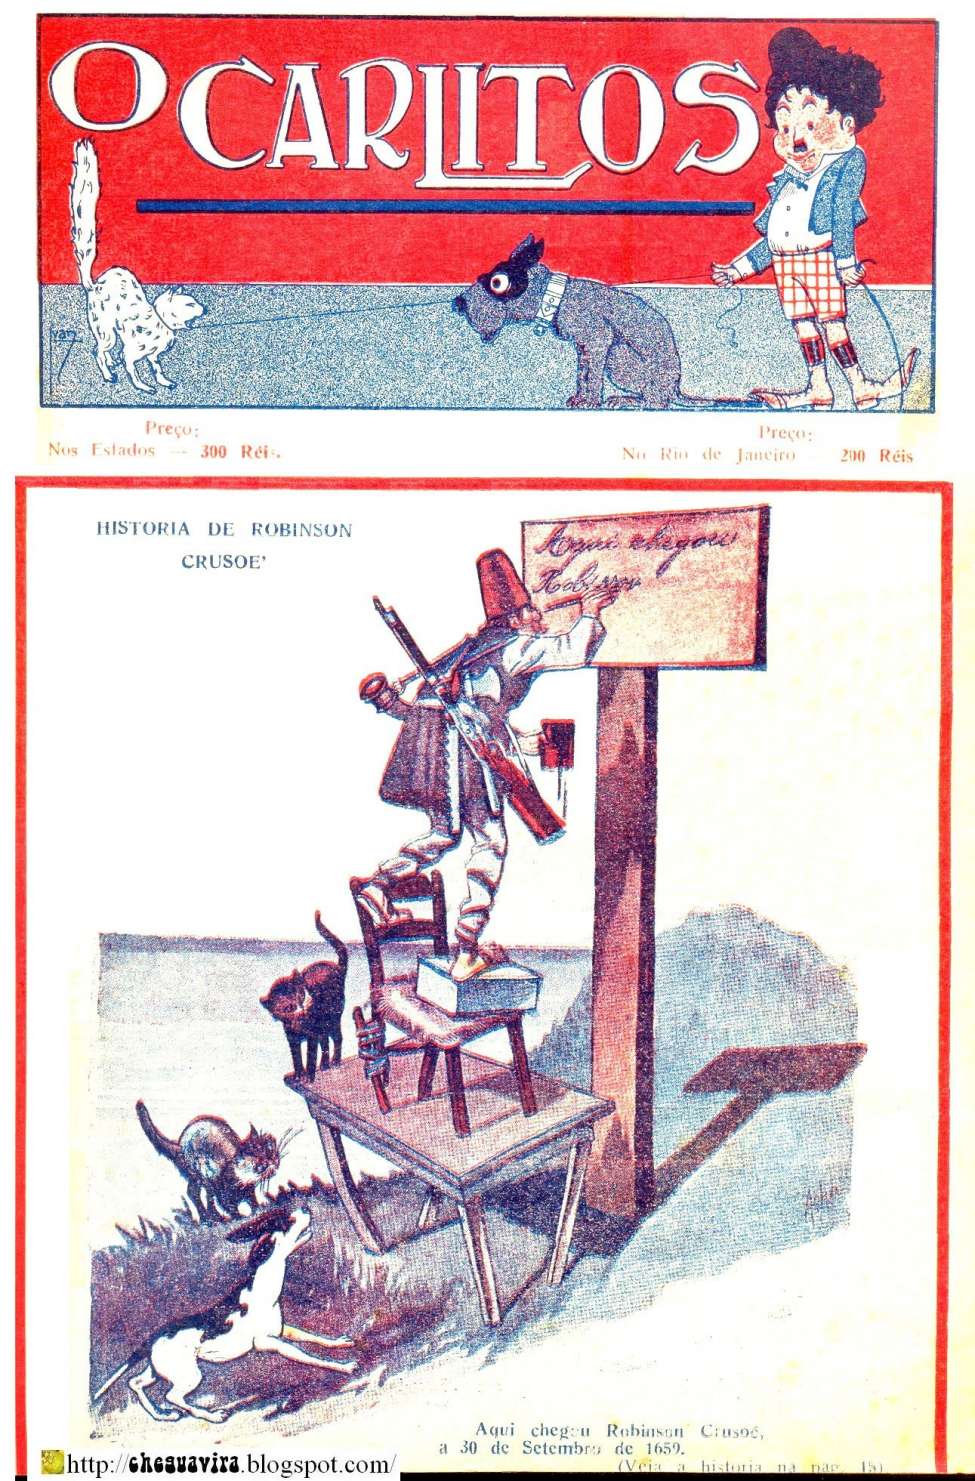 Comic Book Cover For O Carlitos - 1921 - Róbinson Crusoé -por Che Guavira